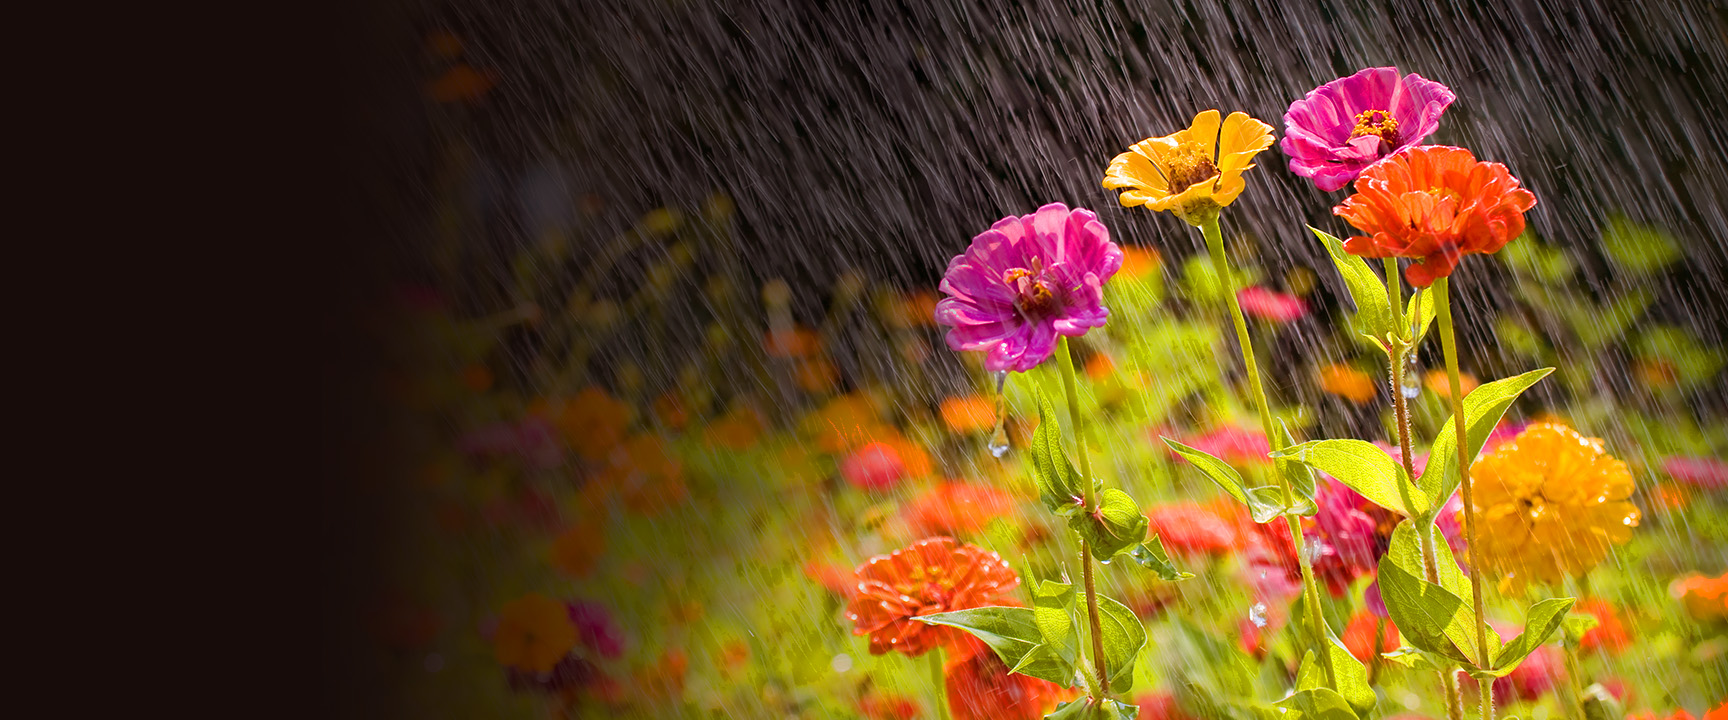 Hoa đầy màu sắc trong mưa